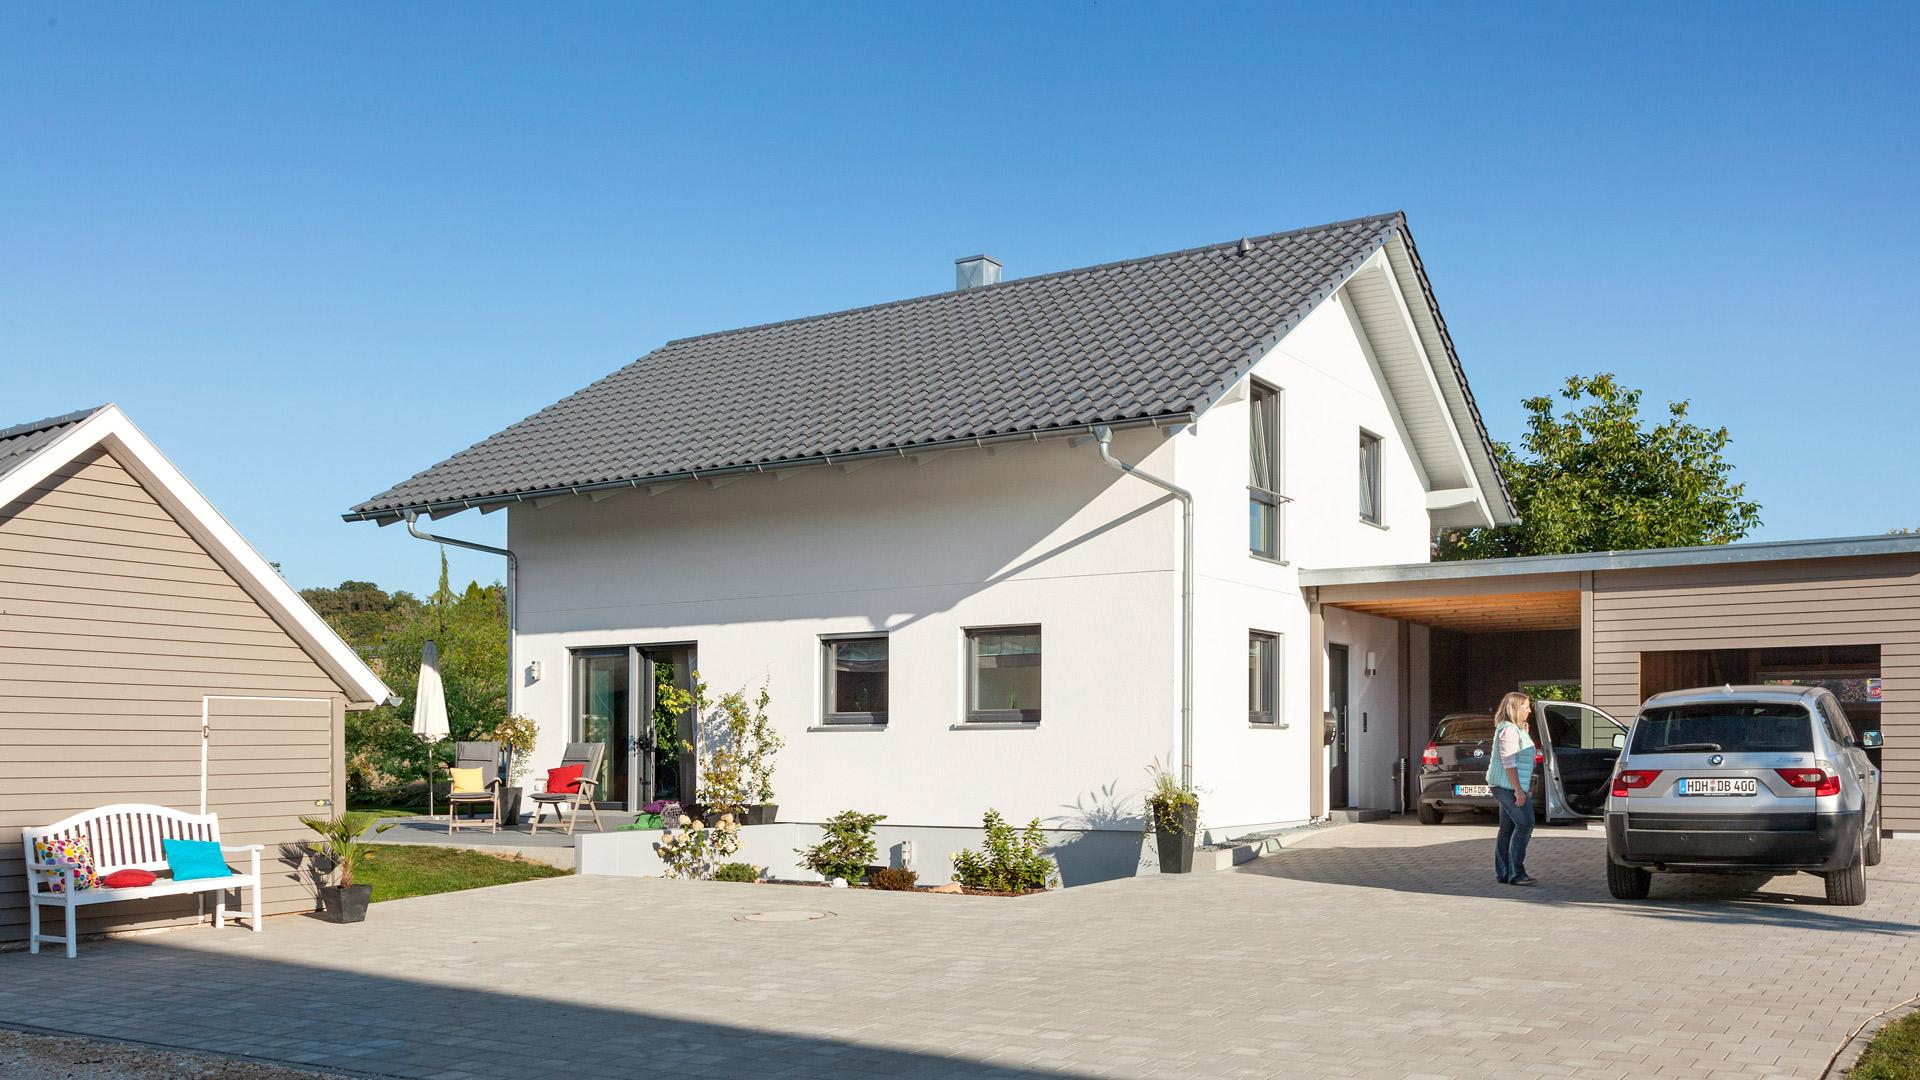 Maison individuelle classique avec grande cour et garage